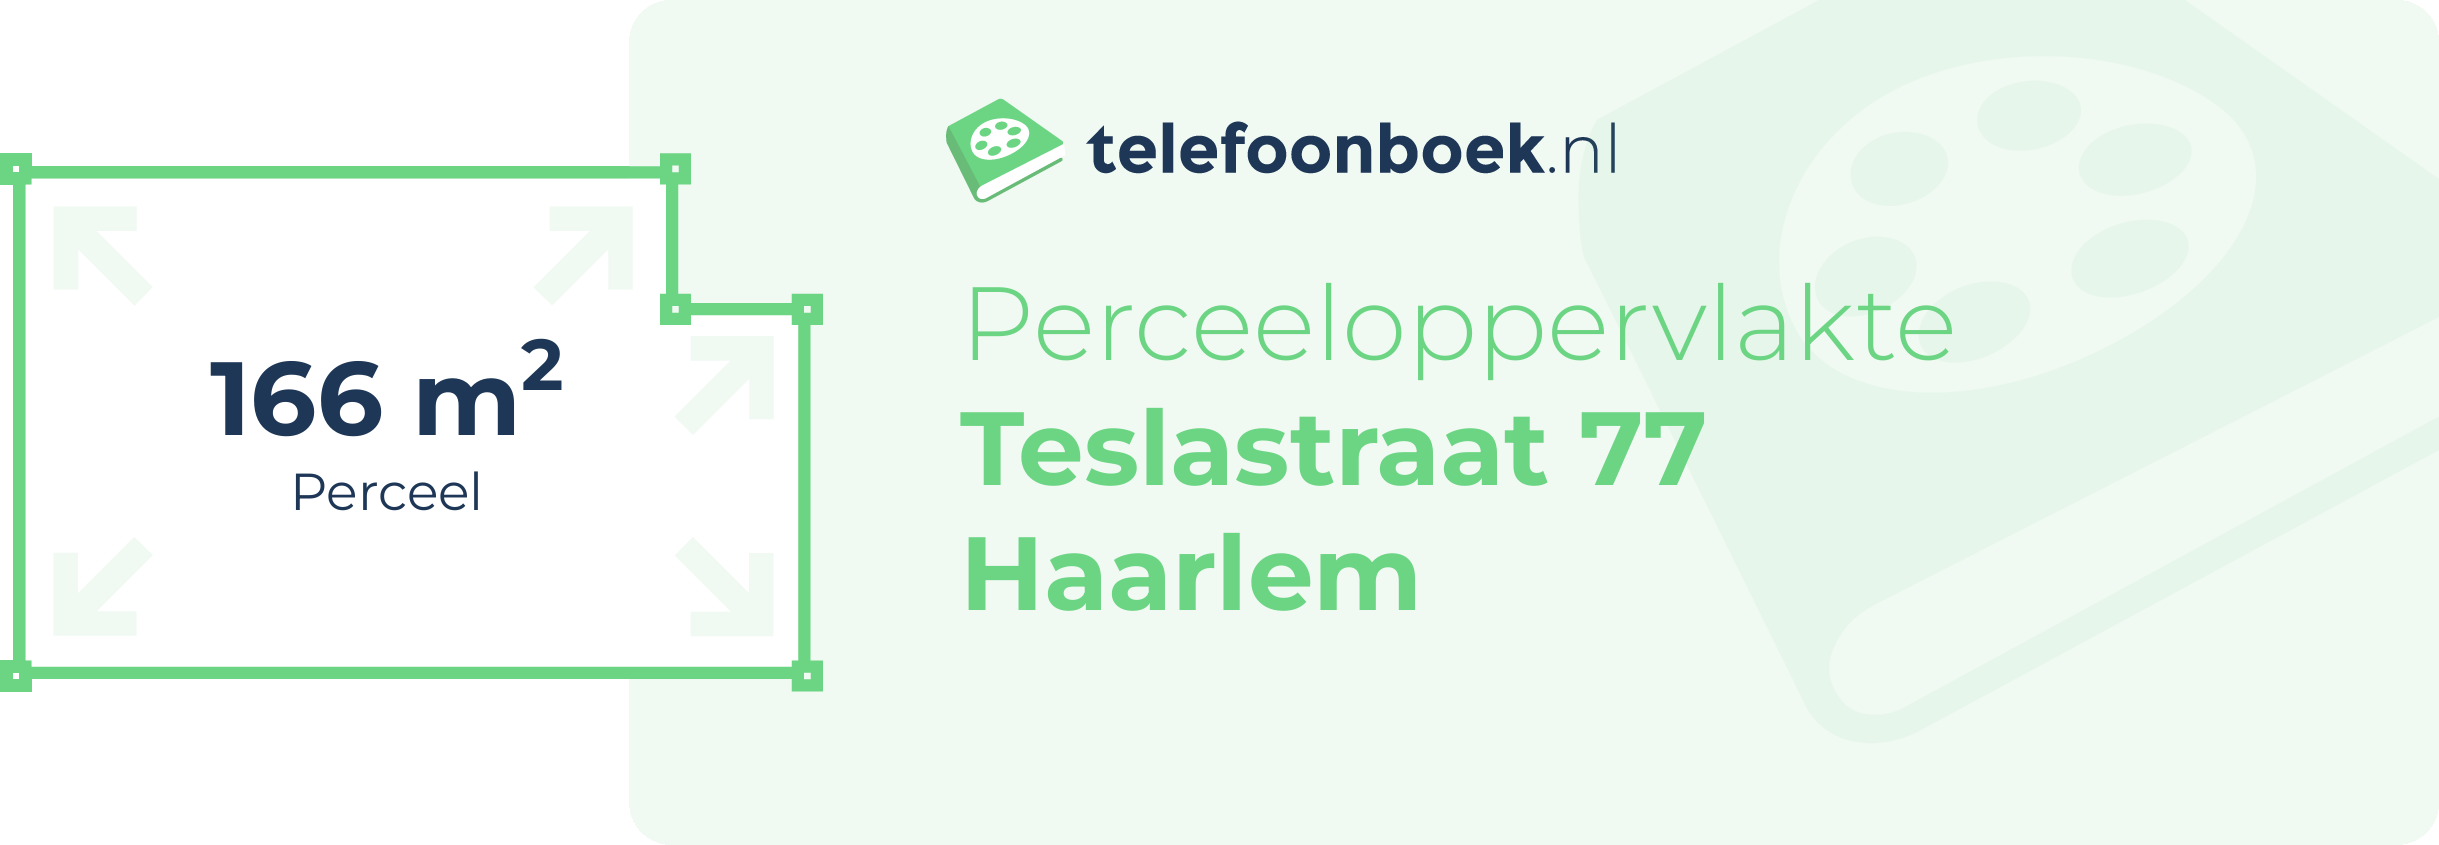 Perceeloppervlakte Teslastraat 77 Haarlem